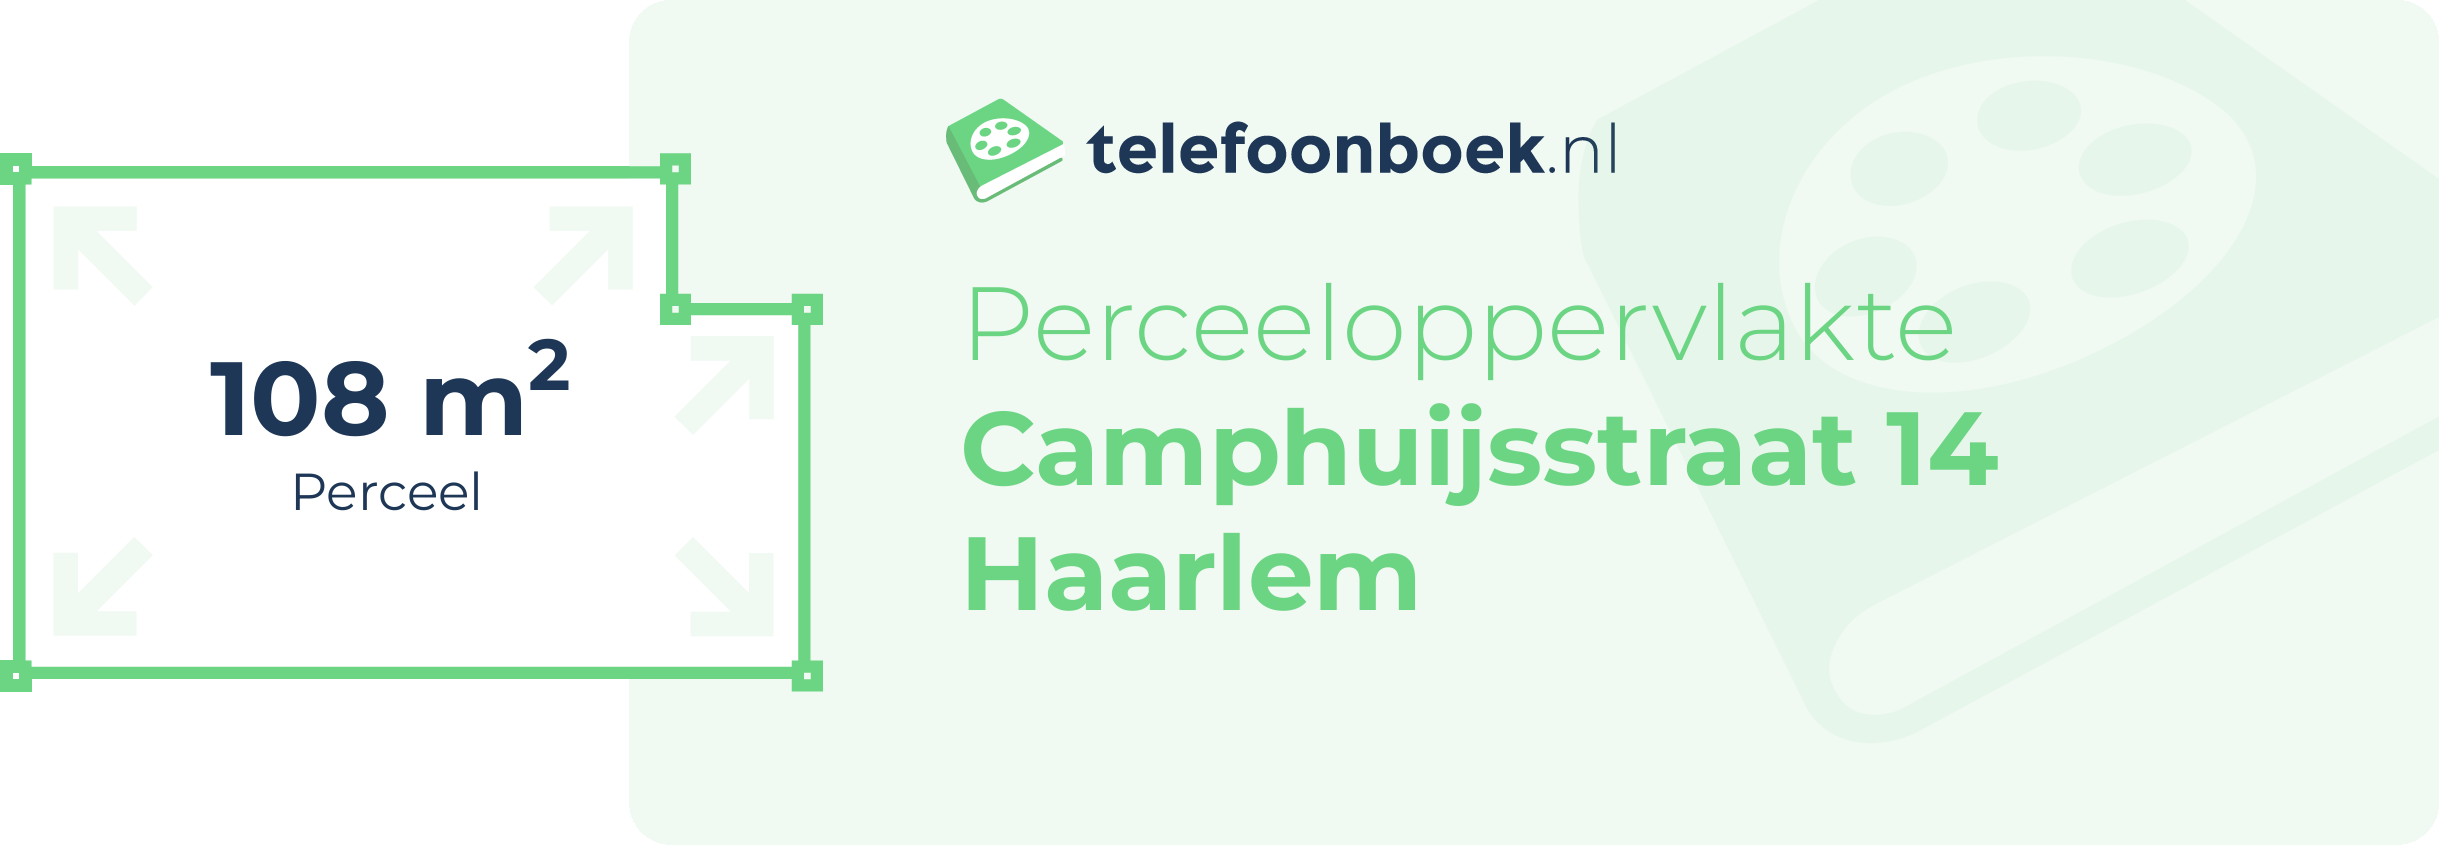 Perceeloppervlakte Camphuijsstraat 14 Haarlem